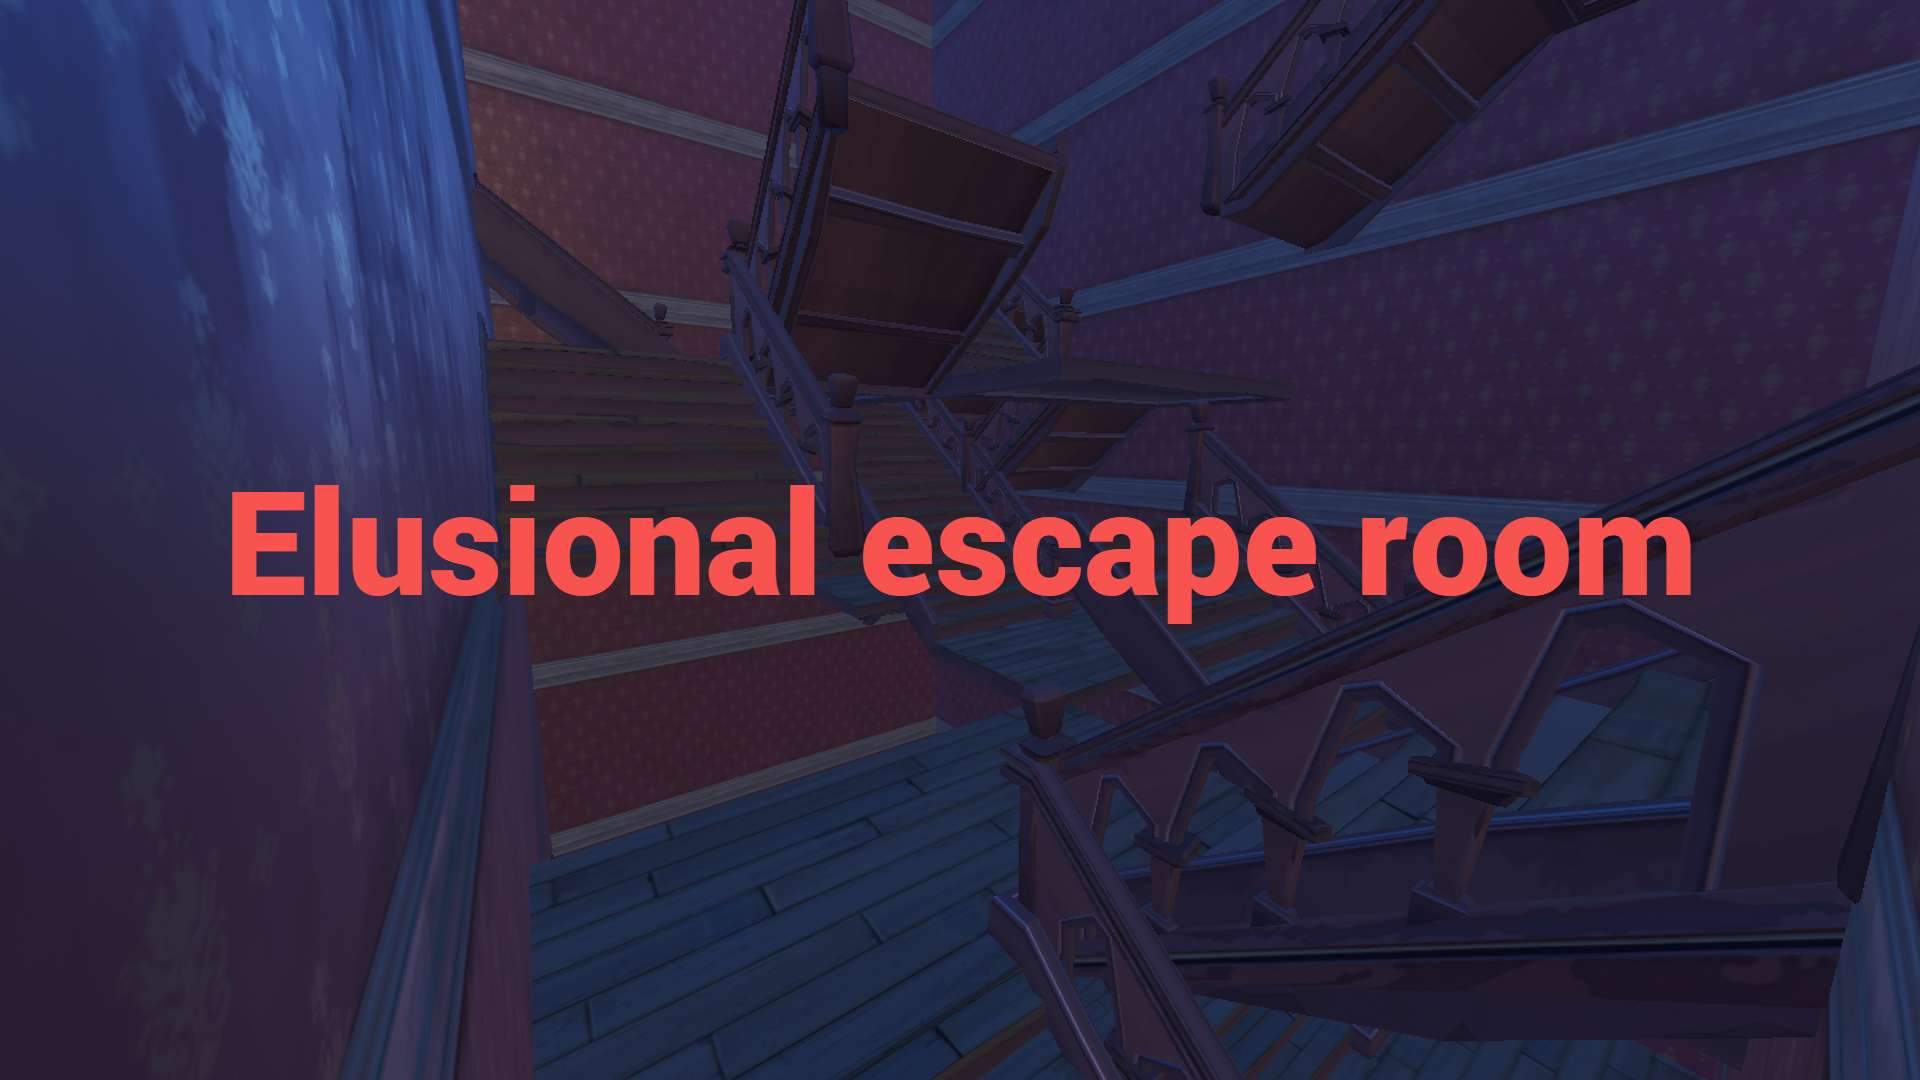 Delusional escape room image 2